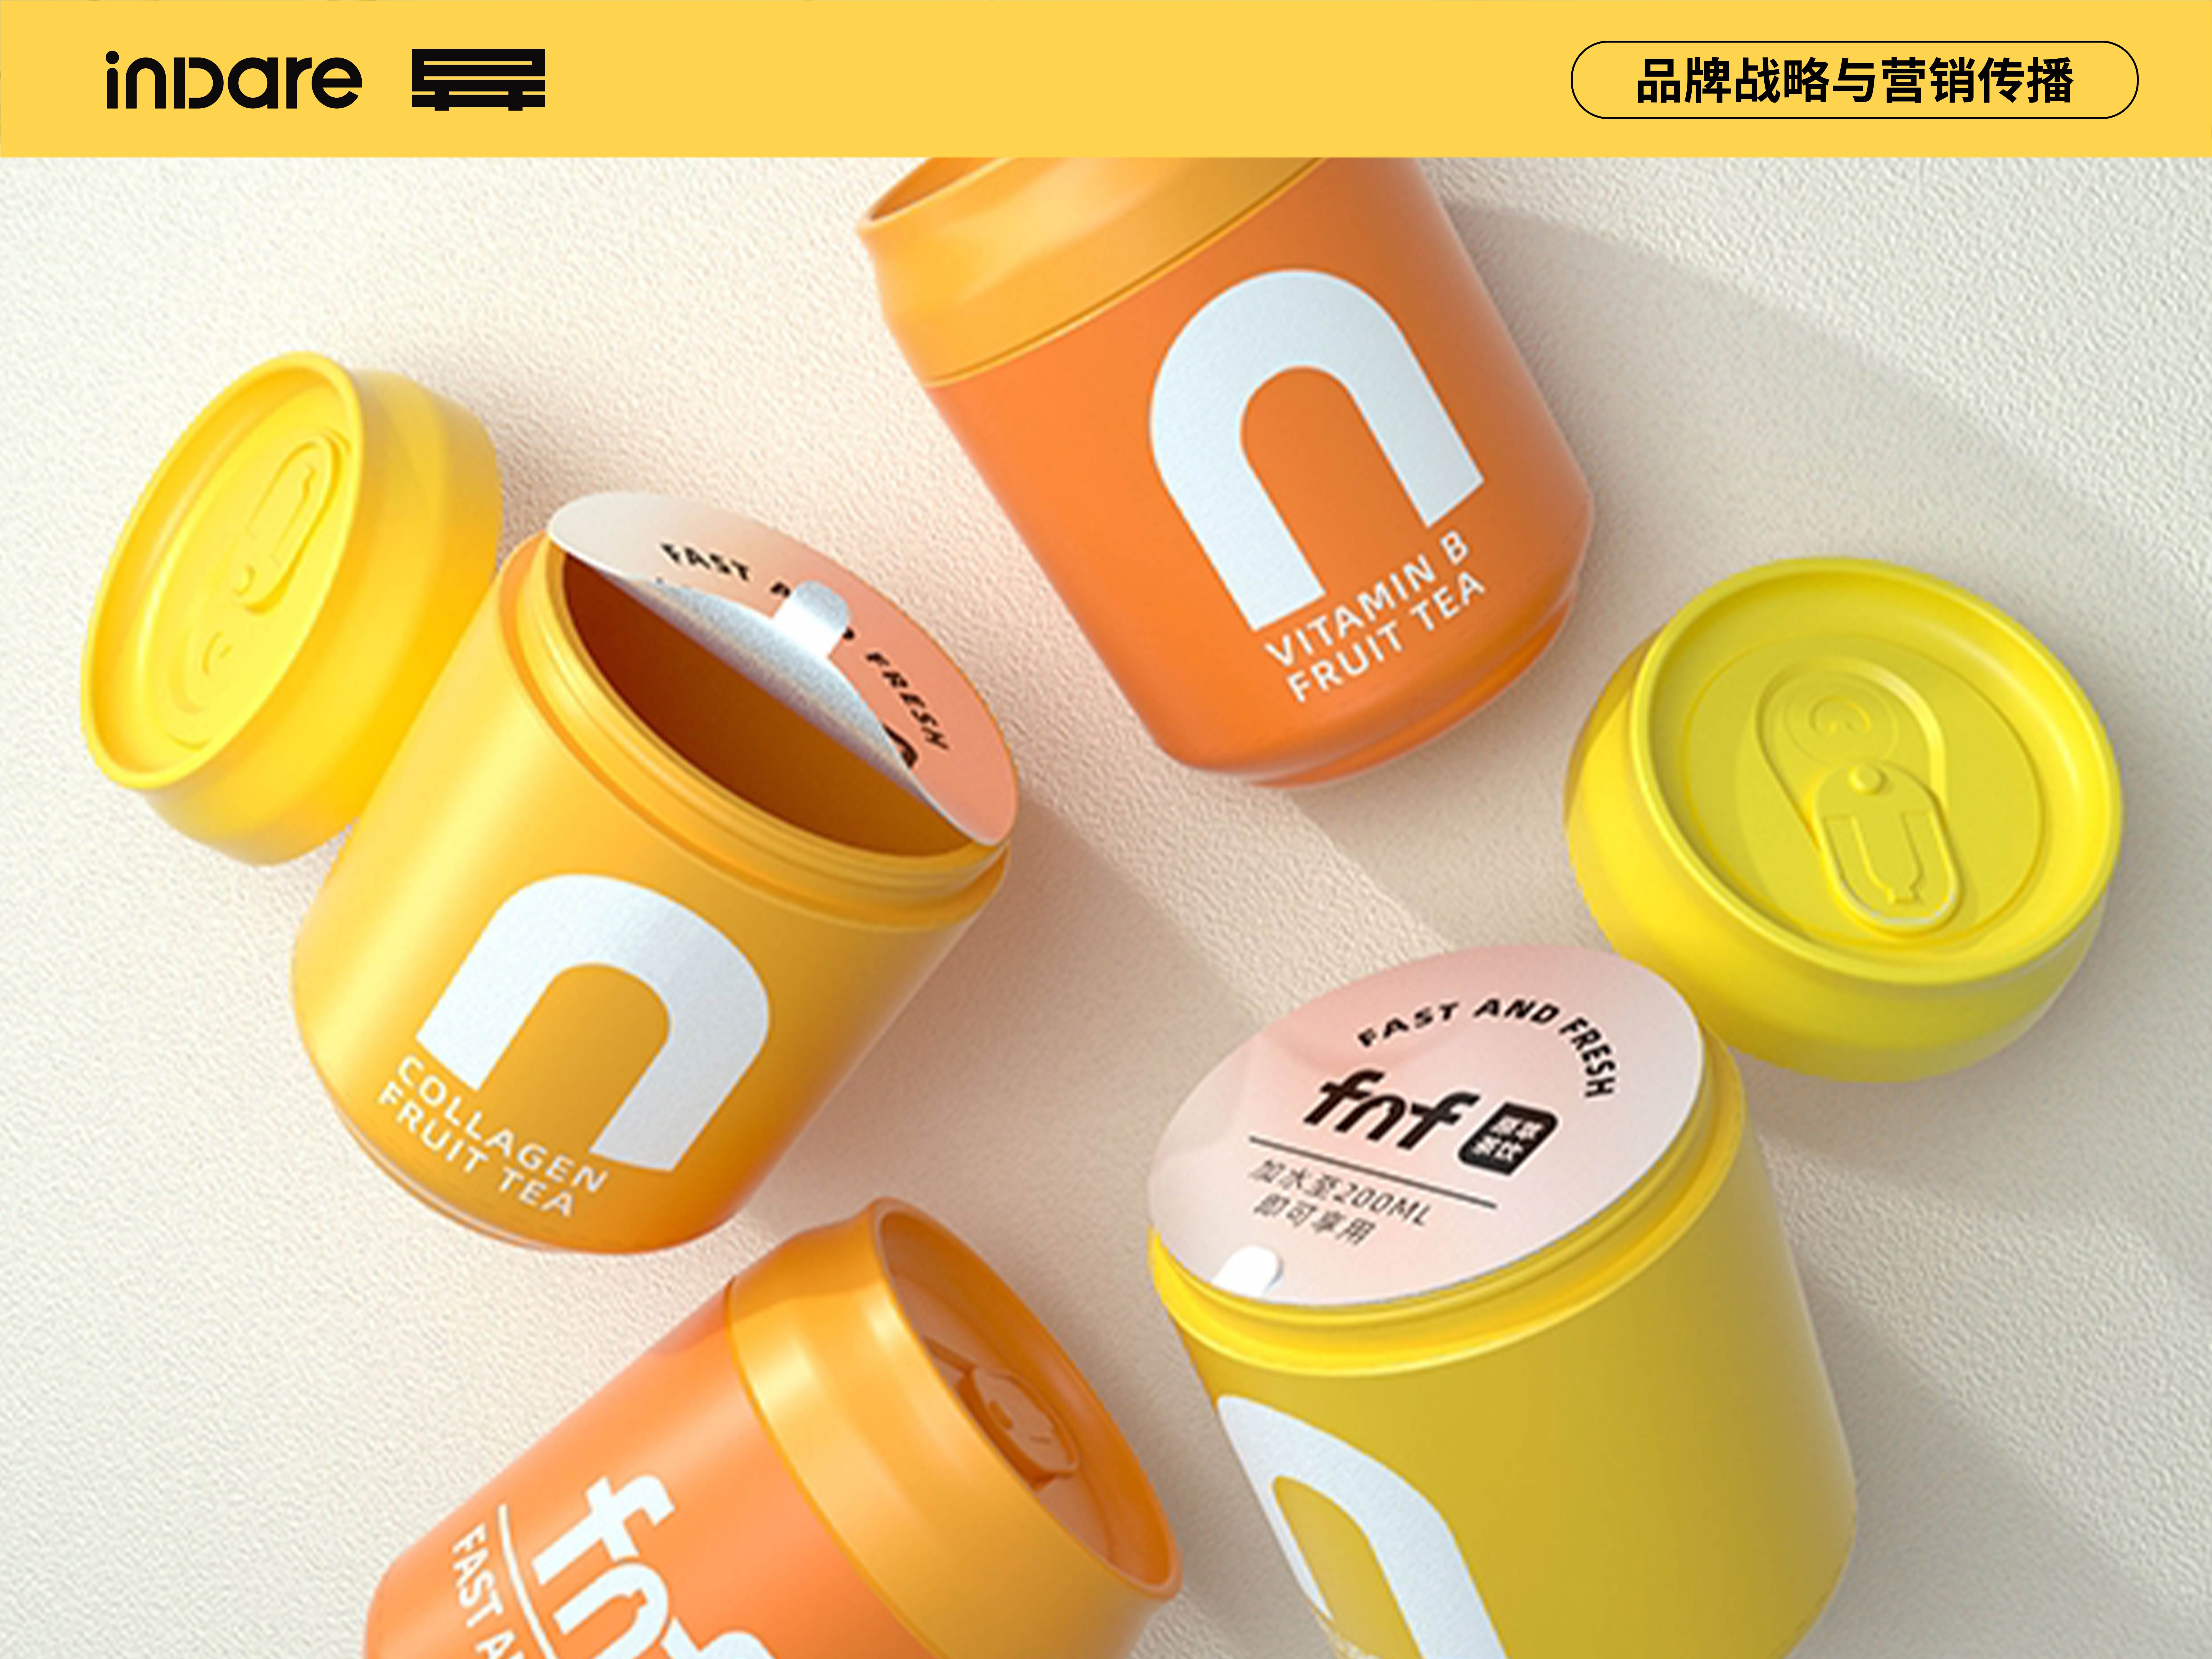  fnf ✖ inDare | 浓缩原萃茶 包装视觉设计